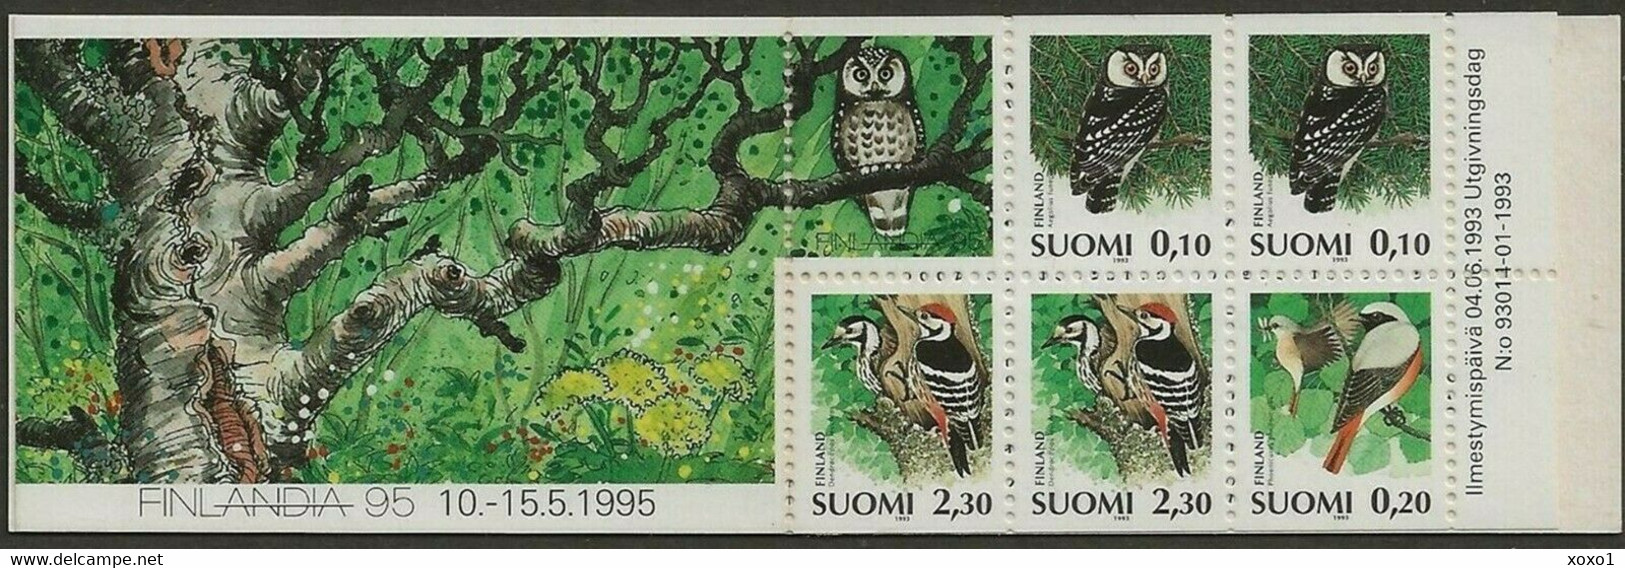 Finland 1993 MiNr. 1212 - 1214  Finnland Birds Boreal Owl, Common Redstart, White-backed Woodpecker  5v MNH** 2.70 € - Uilen